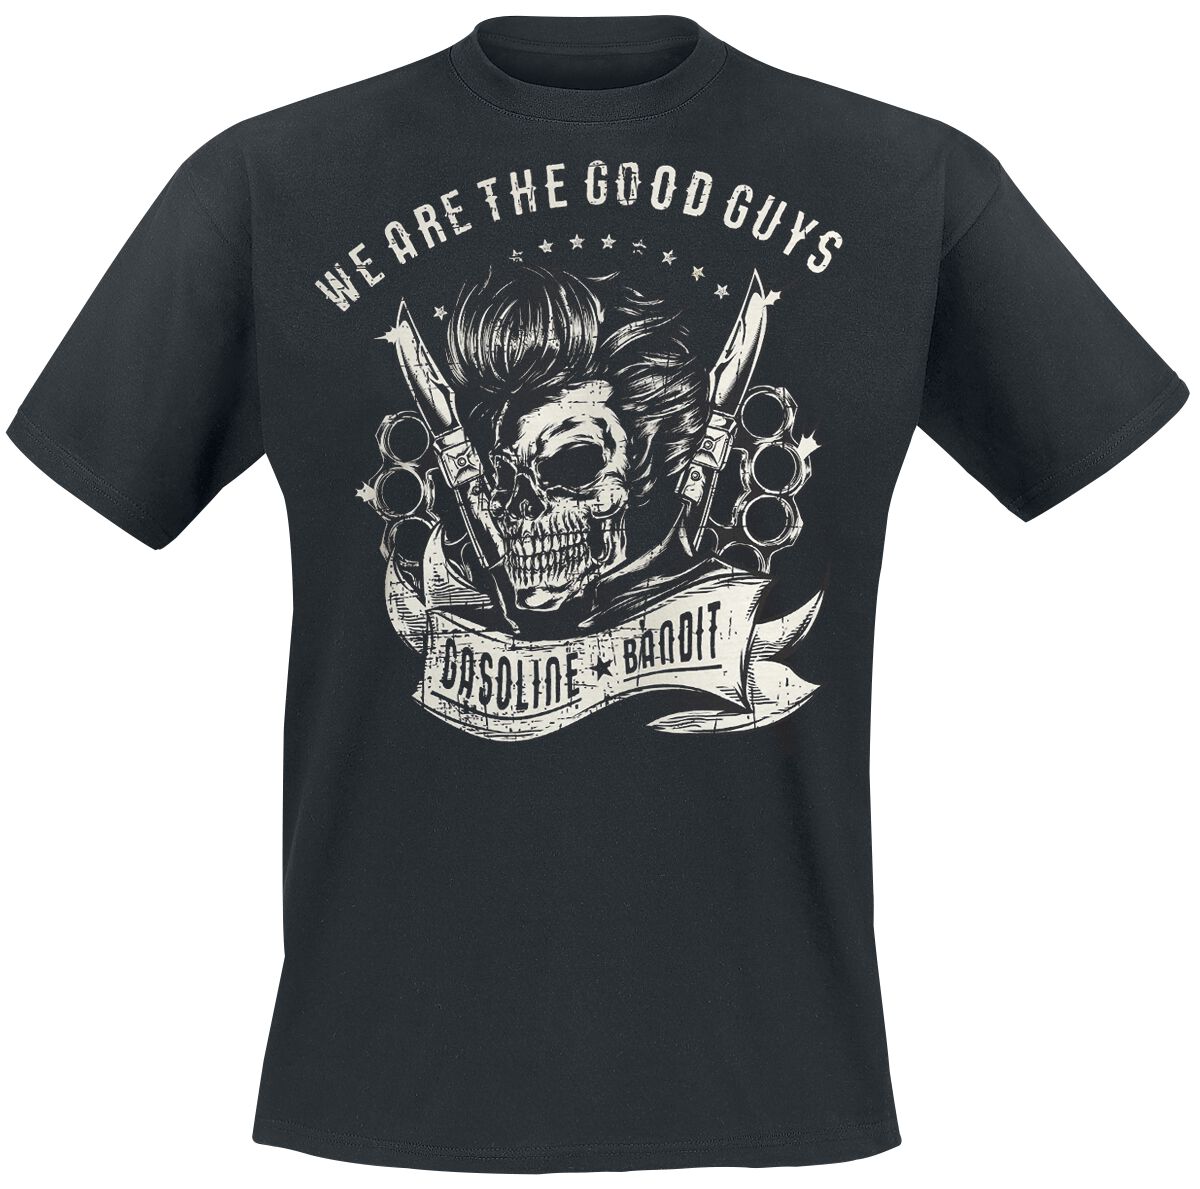 Gasoline Bandit - Rockabilly T-Shirt - We Are The Good Guys - S bis XXL - für Männer - Größe M - schwarz